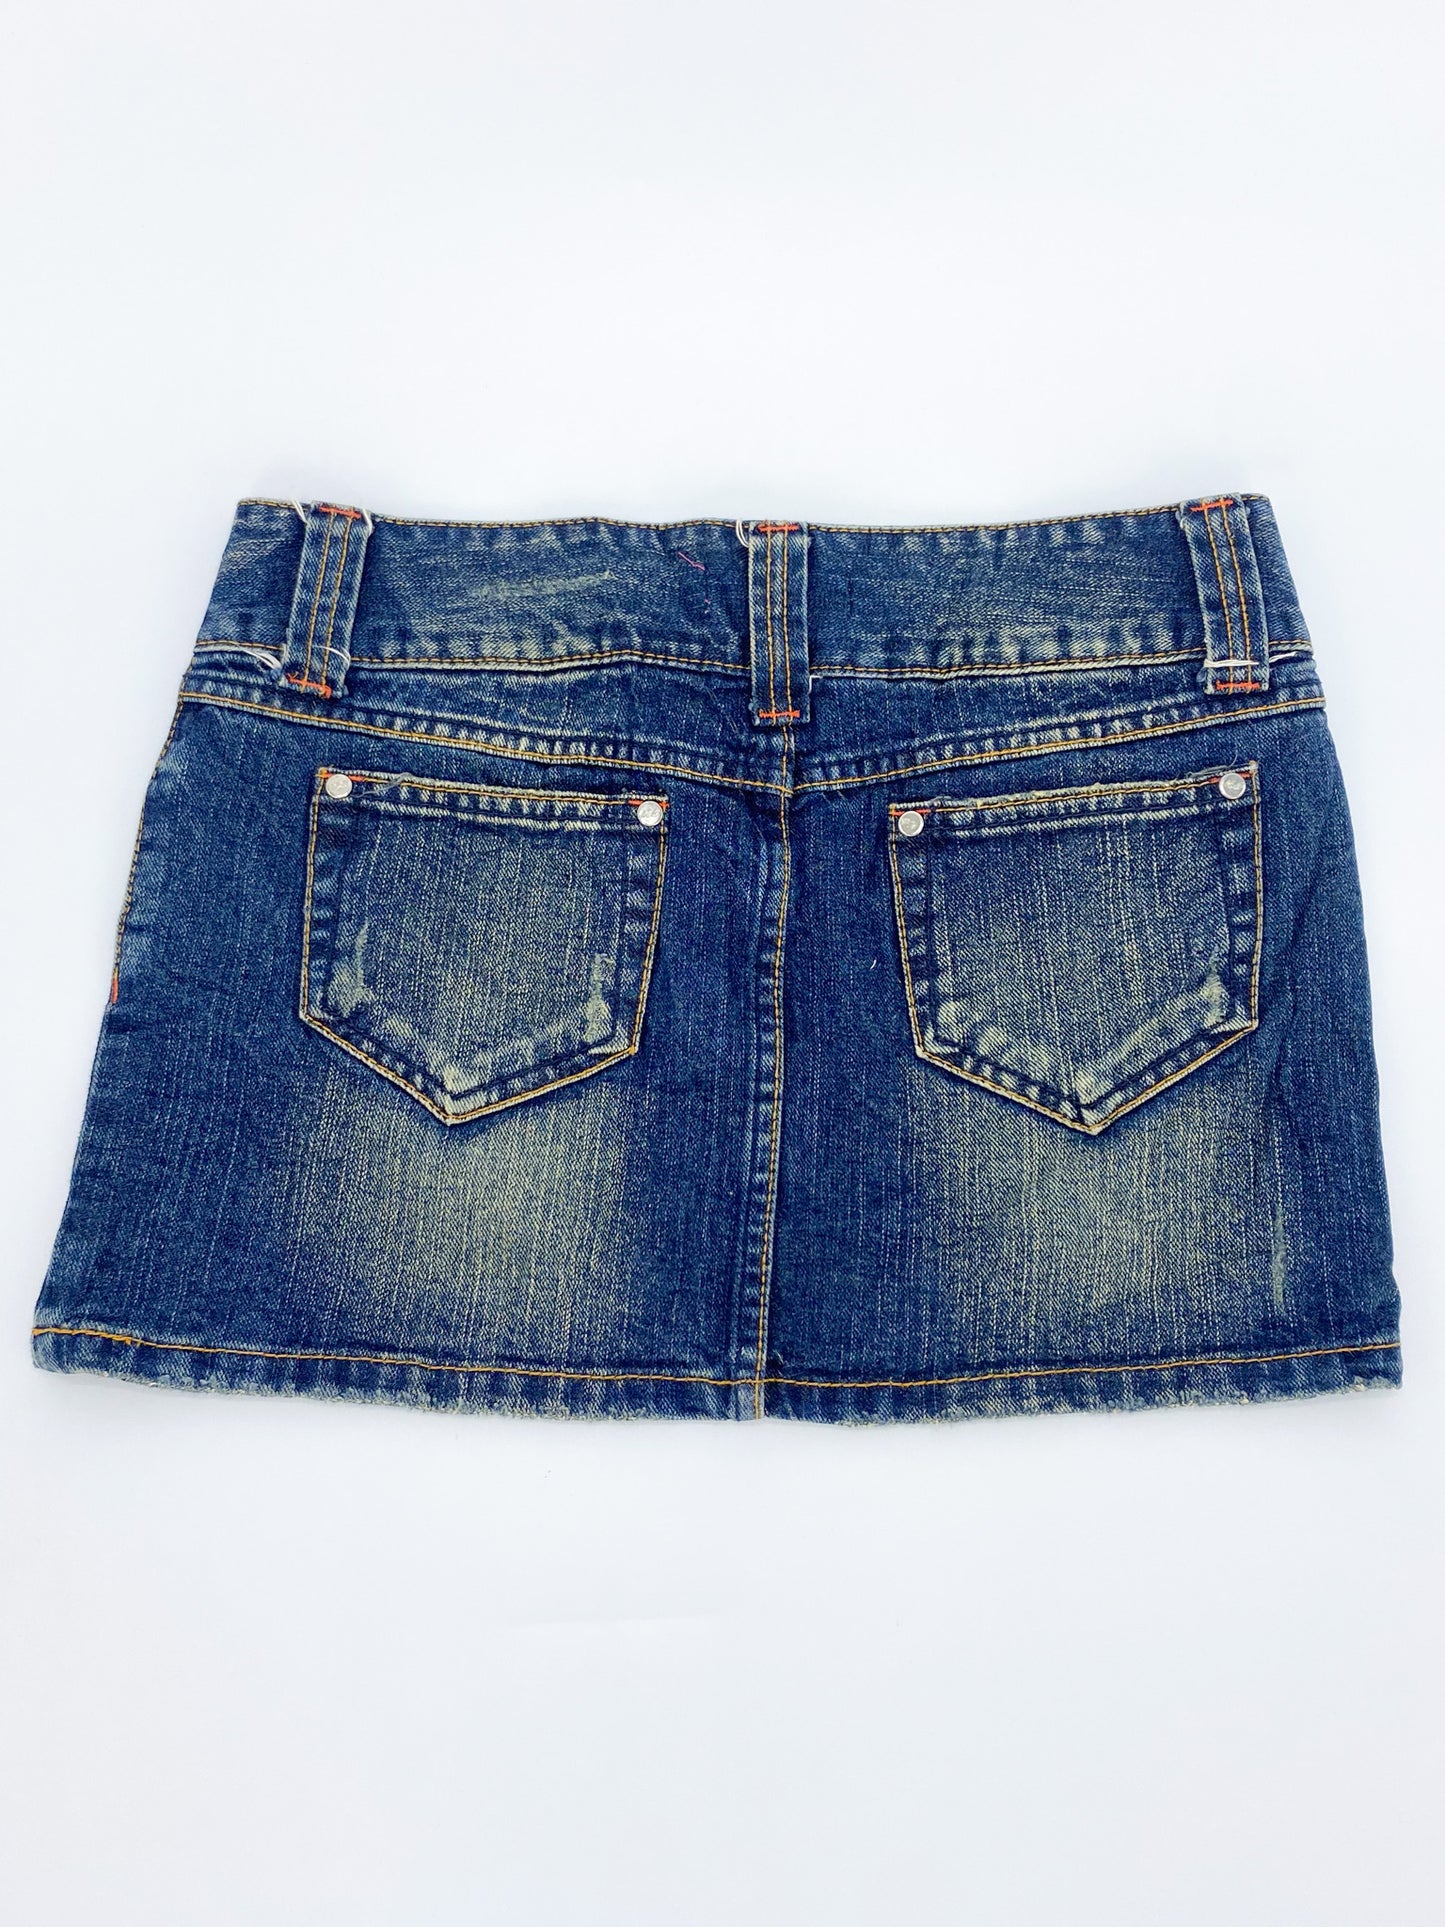 Vintage 00's Embroidered Heart Denim Mini Skirt - S